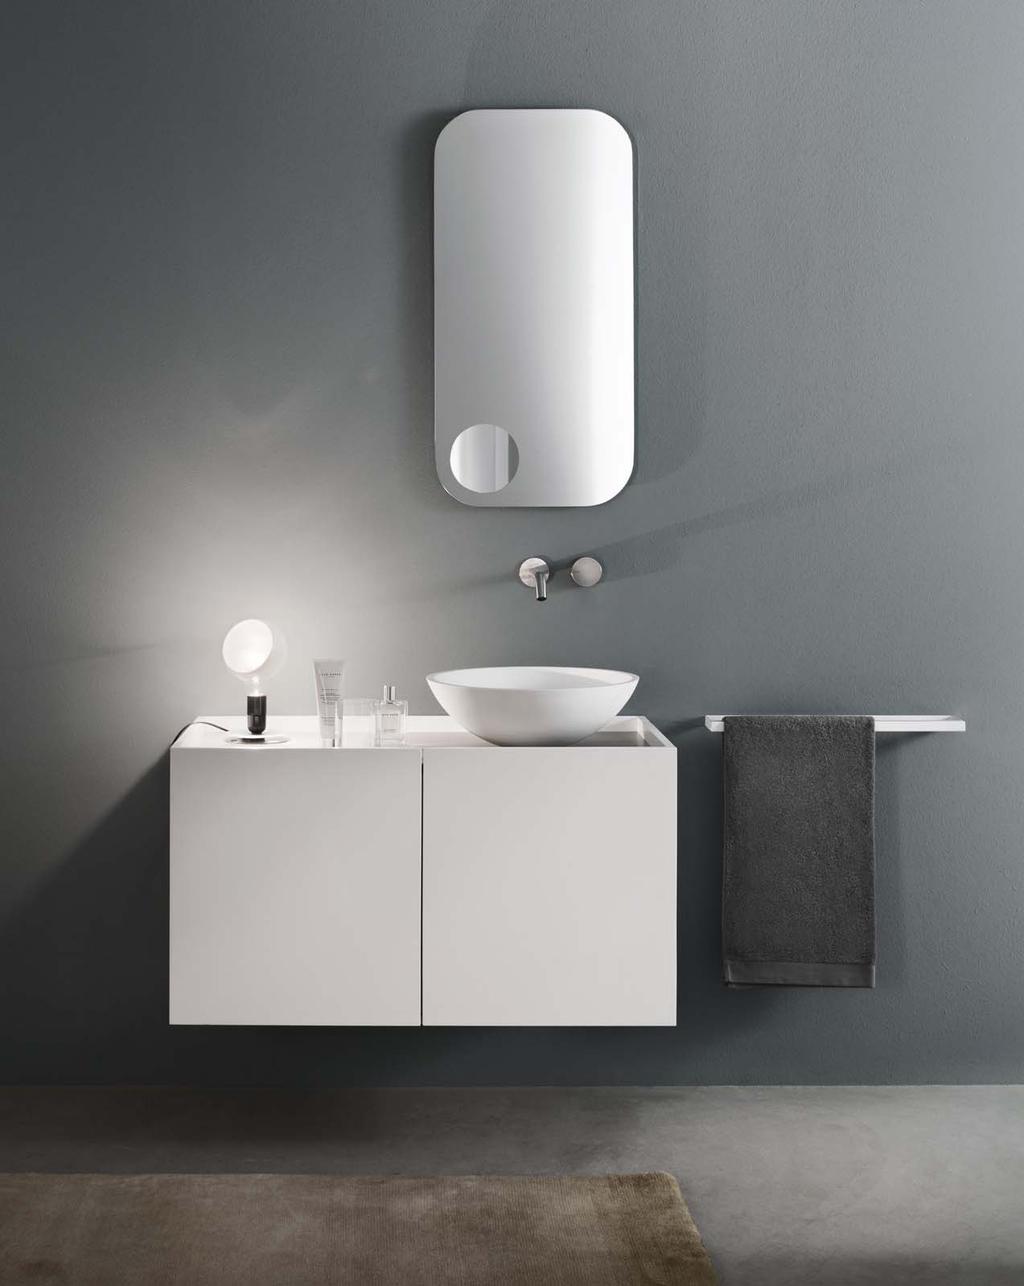 TENDER Design Marco Taietta Tender è un mobile lavabo di dimensioni contenute, caratterizzato dal particolare risvolto dell anta e dalla sua sporgenza rispetto al filo top che ne consente l apertura.